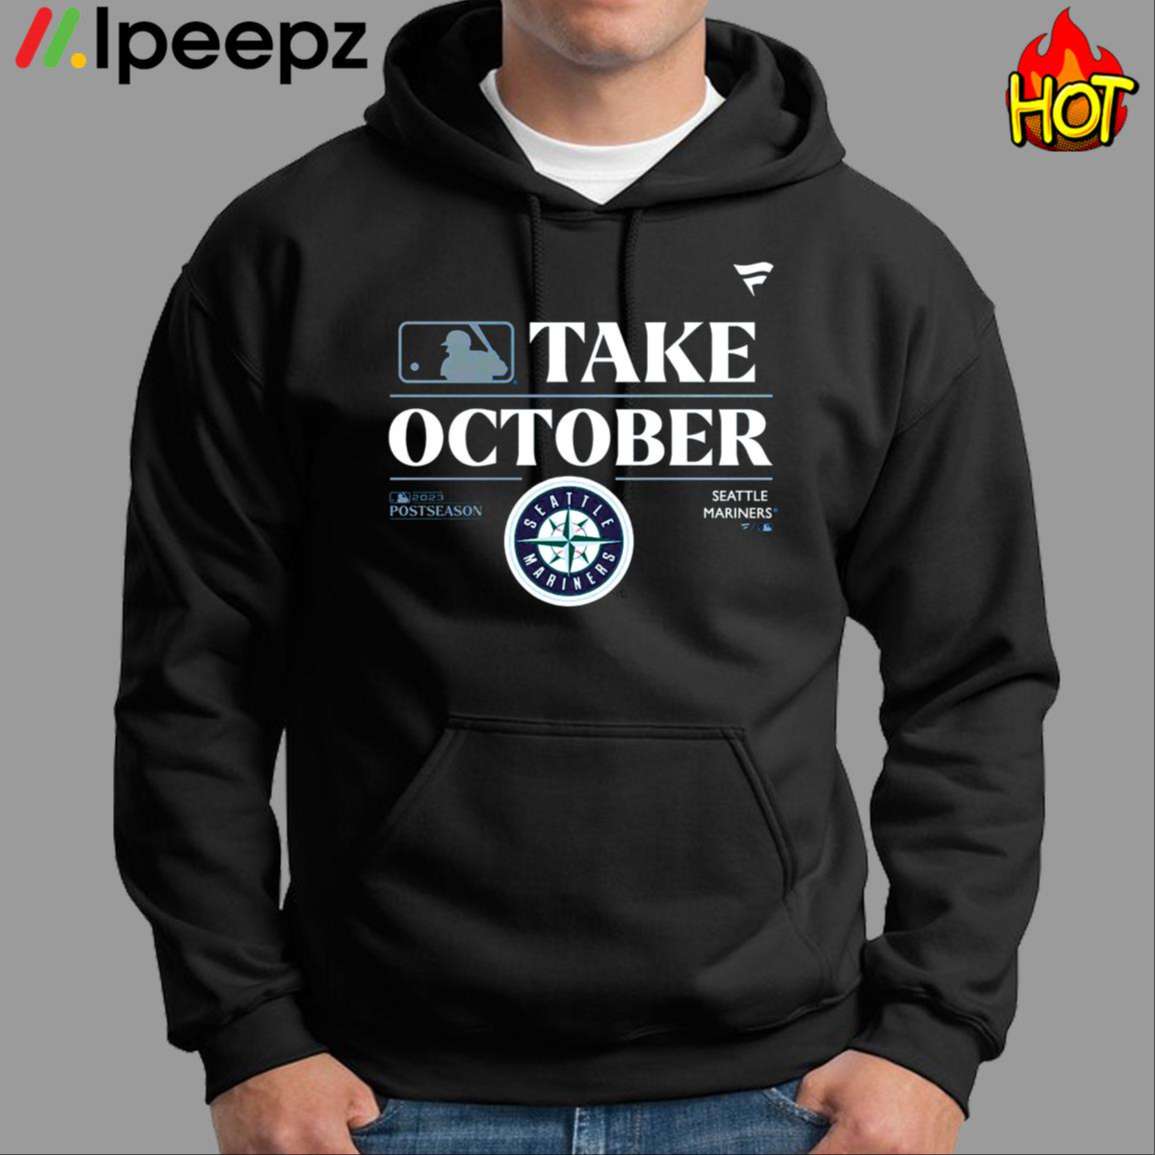 Seattle Mariners Mlb Take October 2023 Postseason Shirt